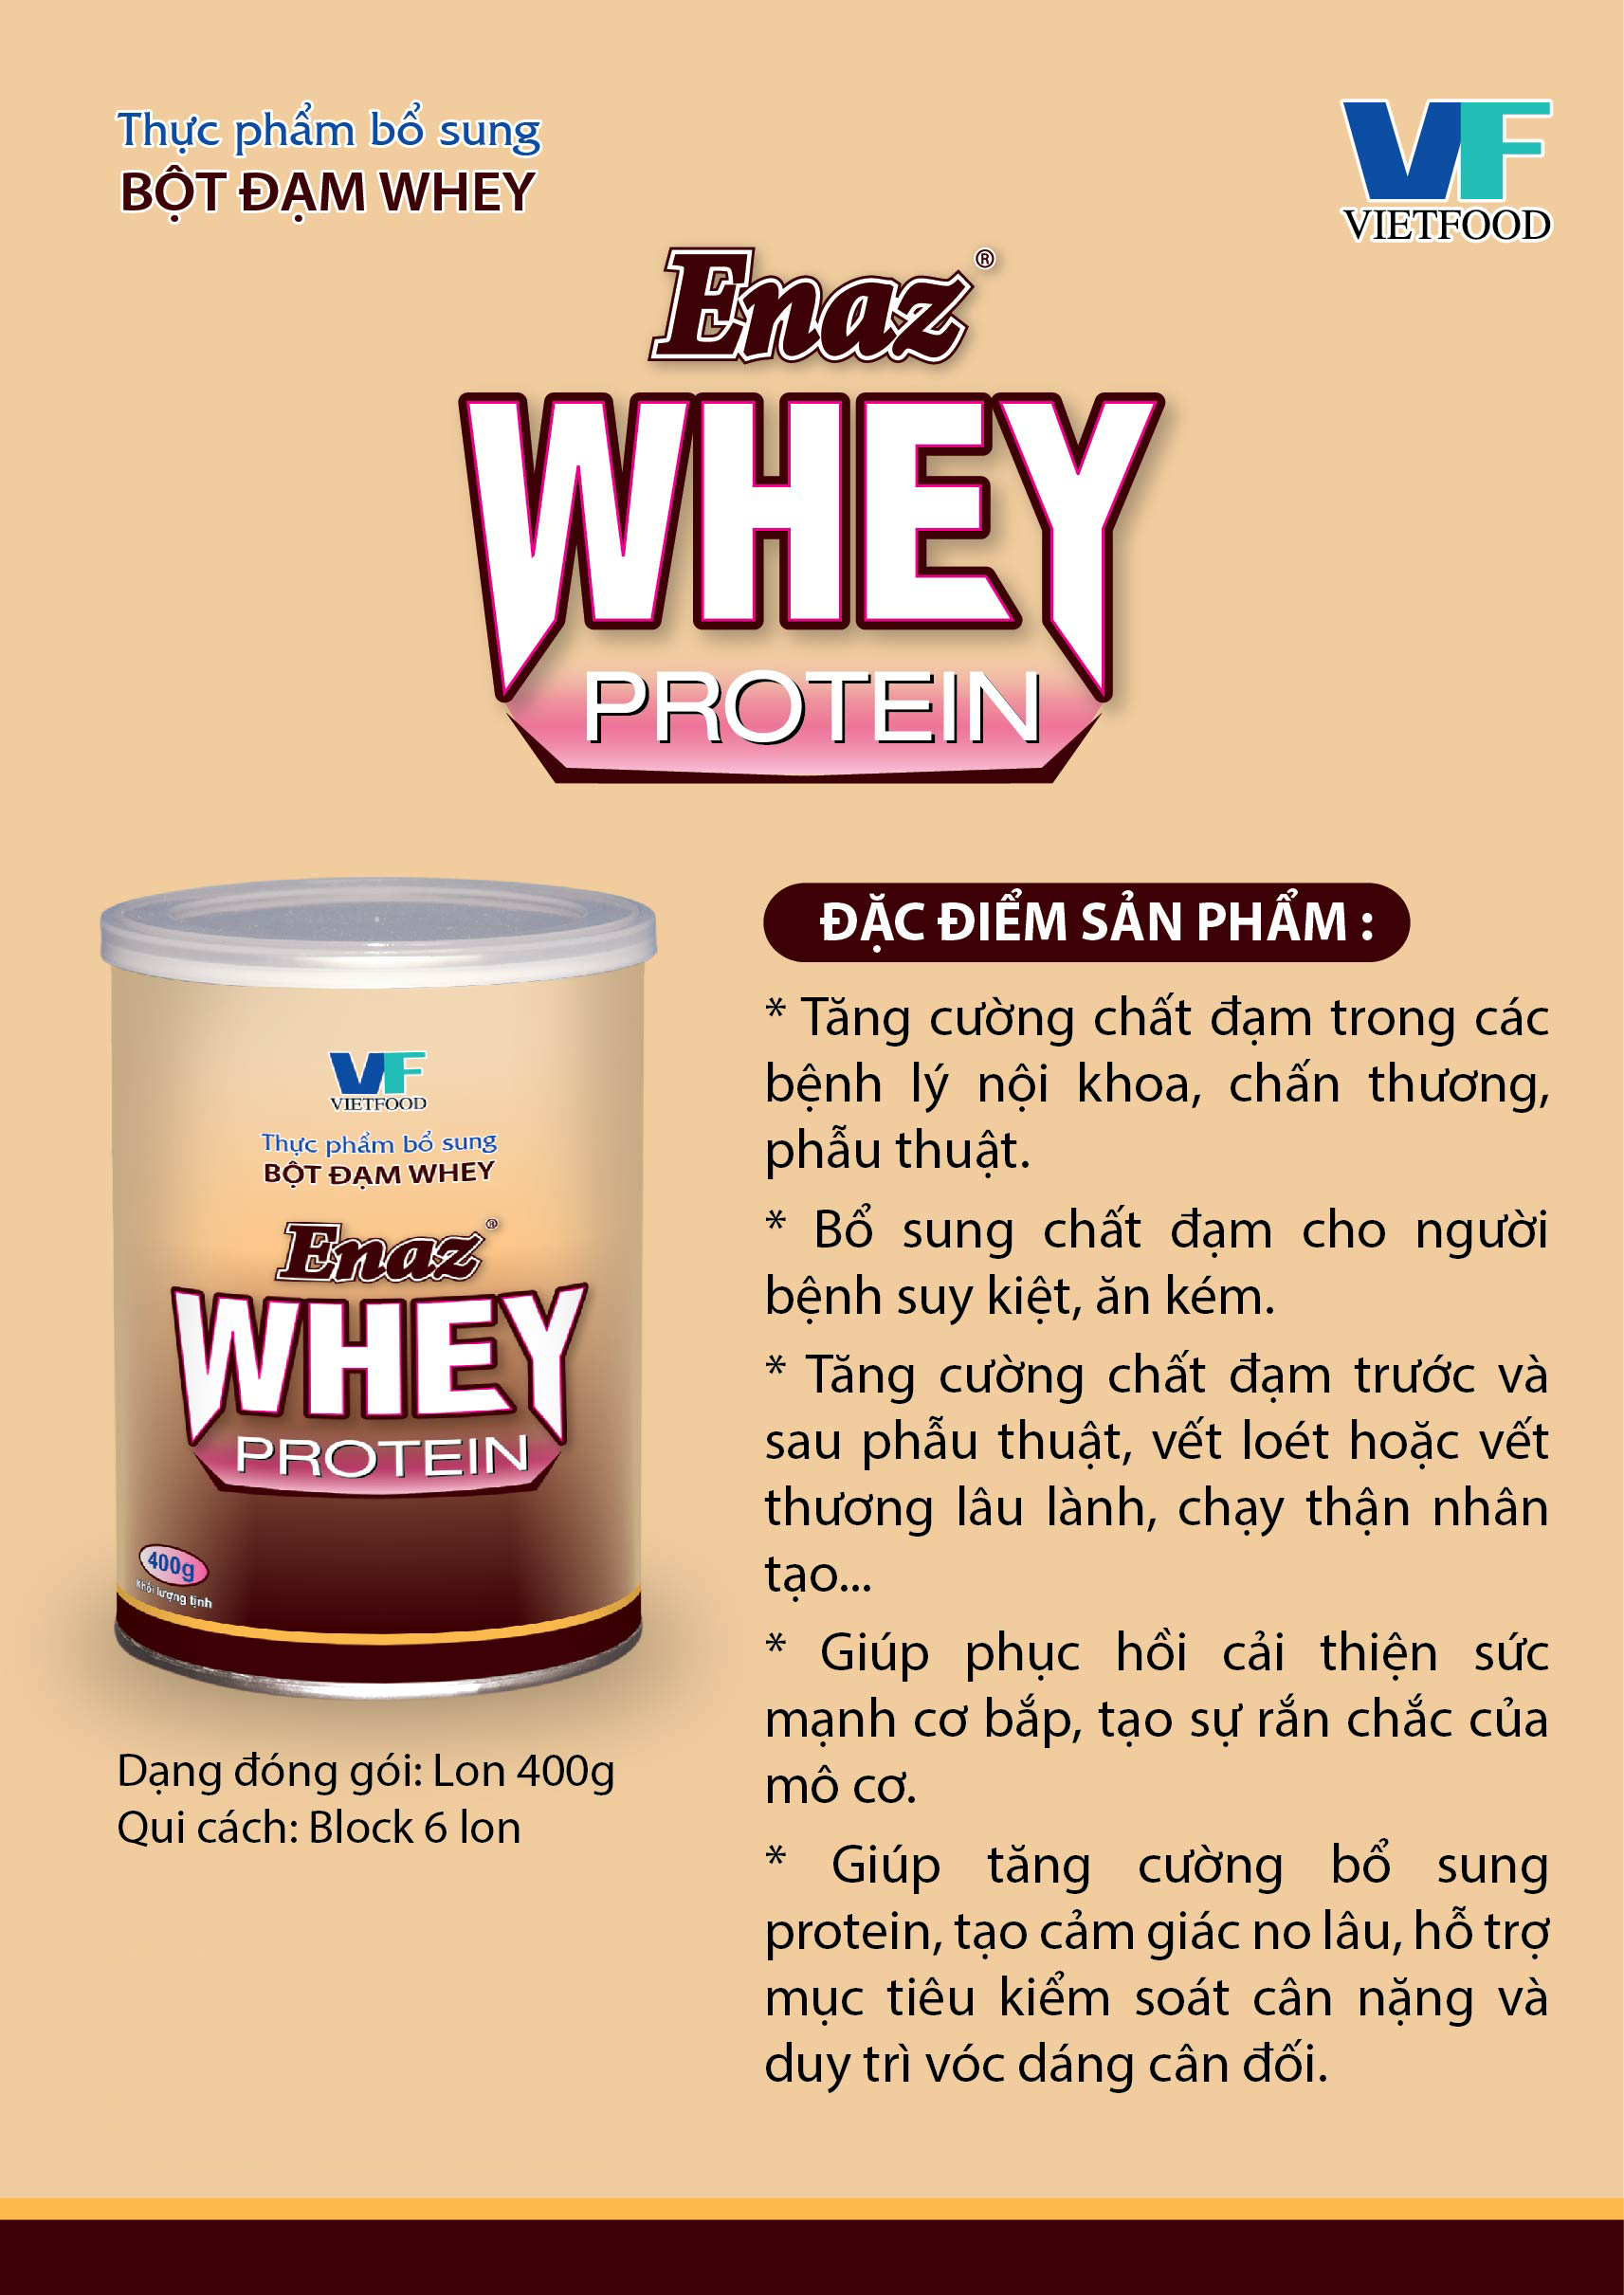 Thực phẩm bổ sung đạm ENAZ Whey Protein (300g)